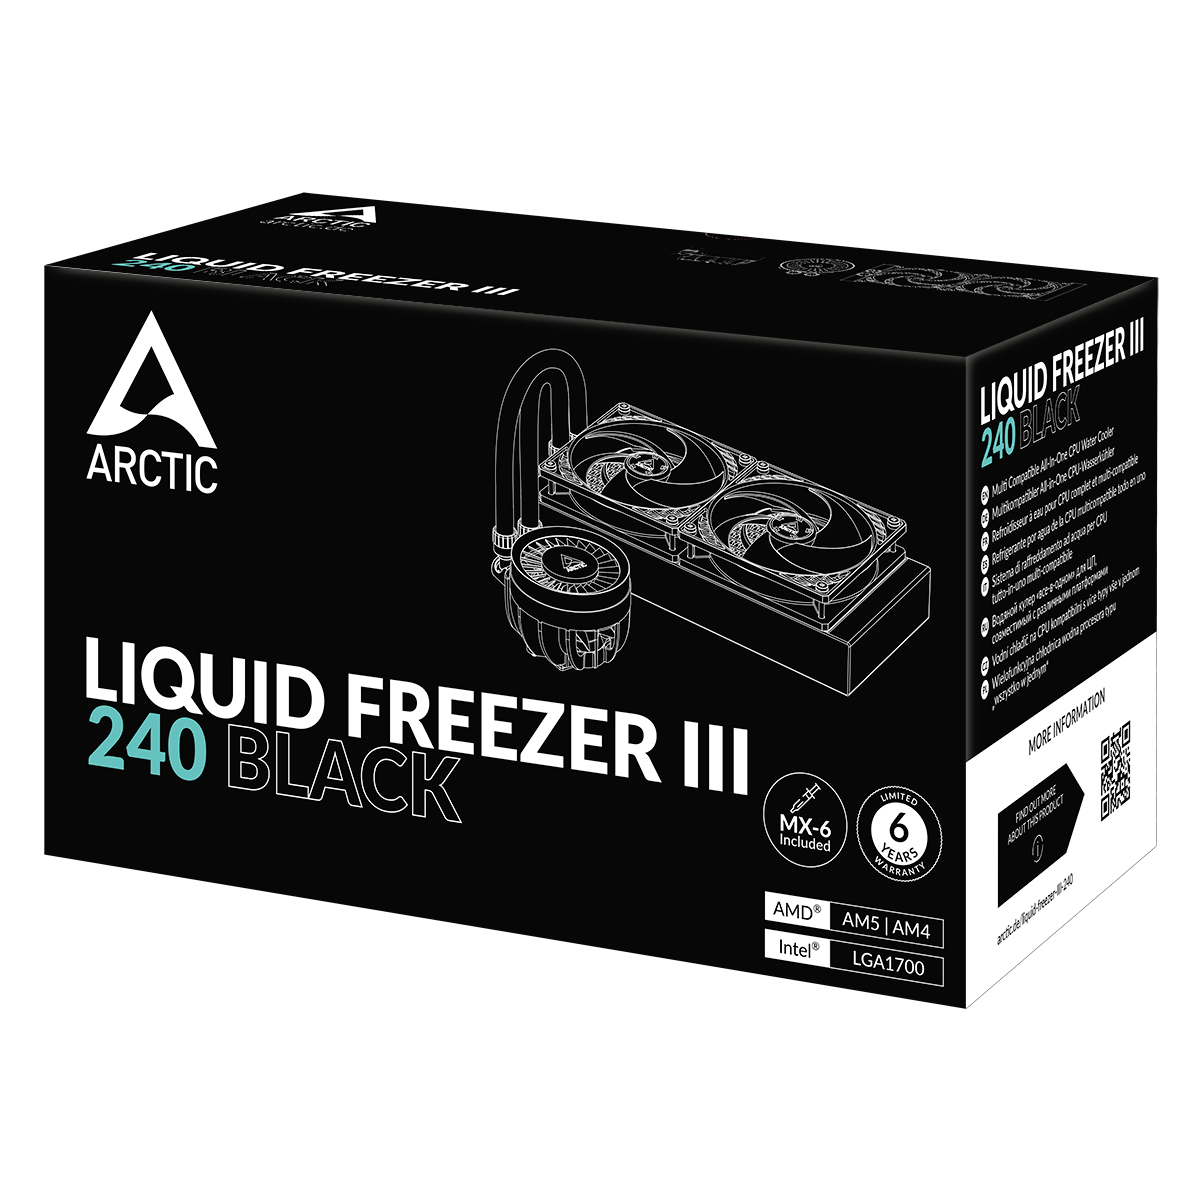 ARCTIC Liquid Freezer III 240 240mm 水冷散熱器